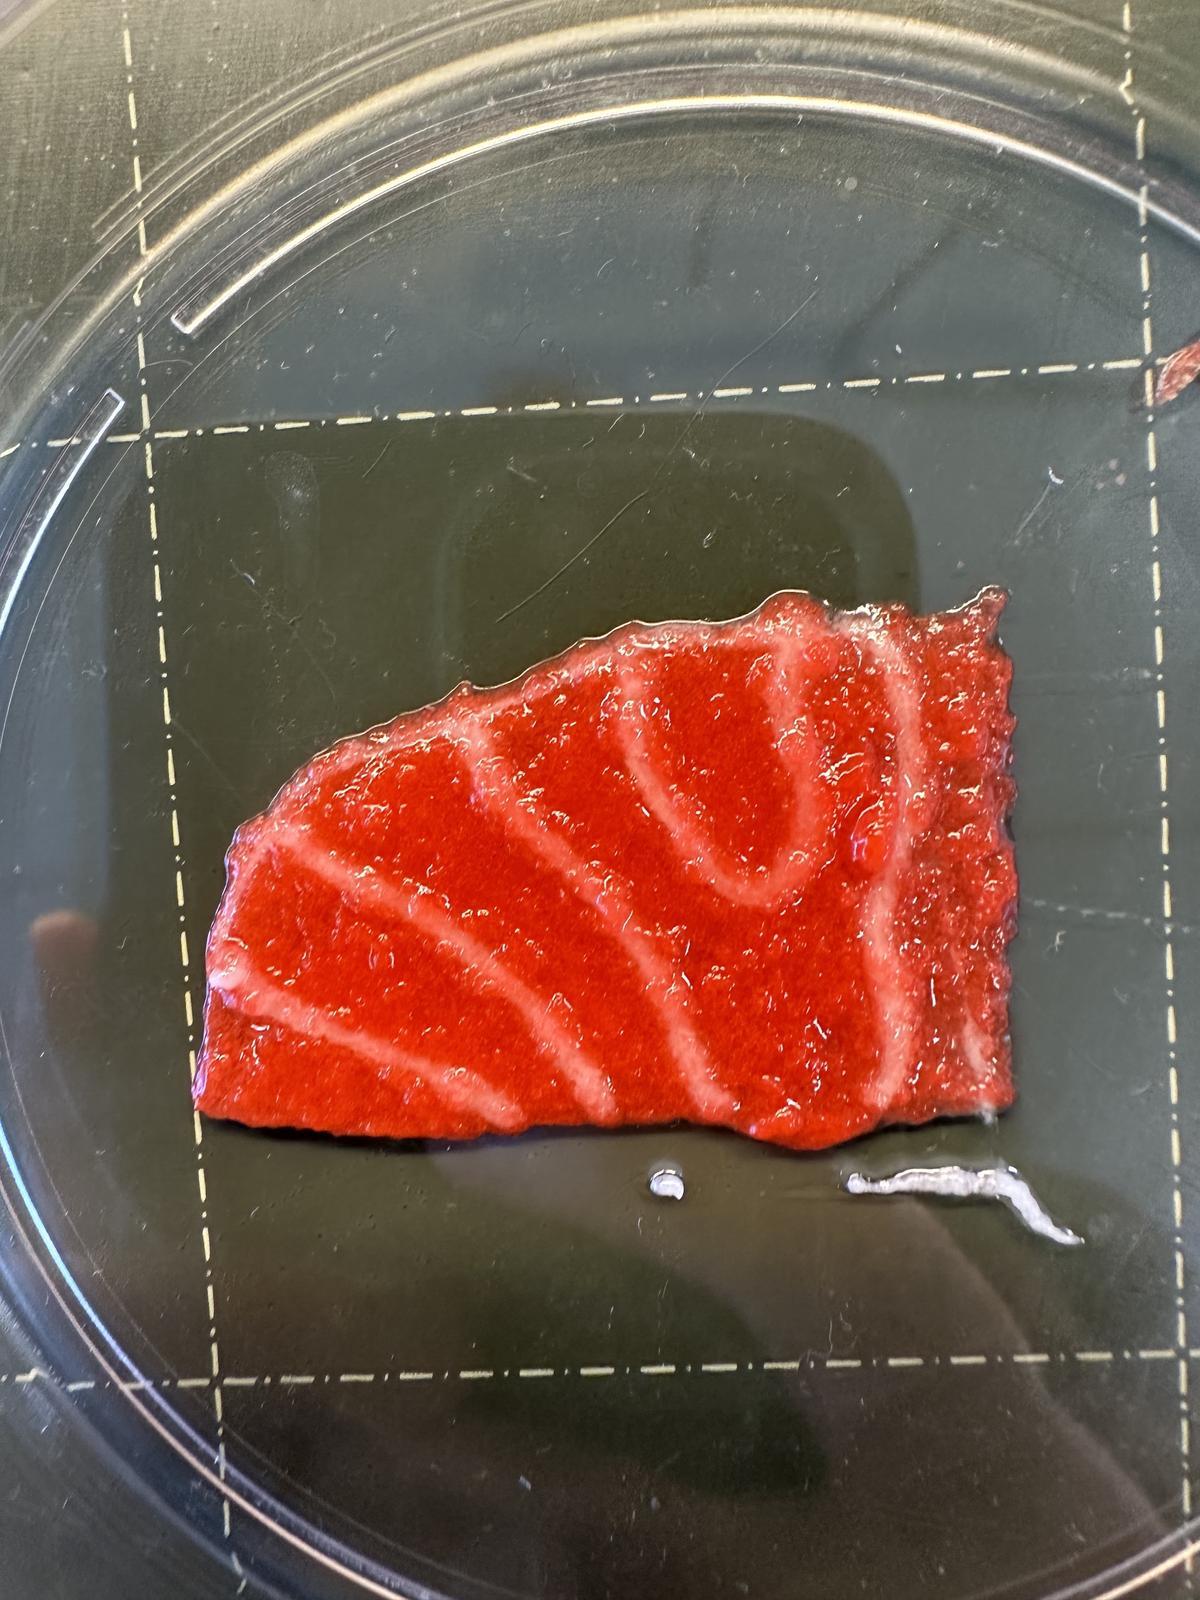 Prototipo de sashimi desarrollado por métodos de agricultura celular en el proyecto Algae2Fish.